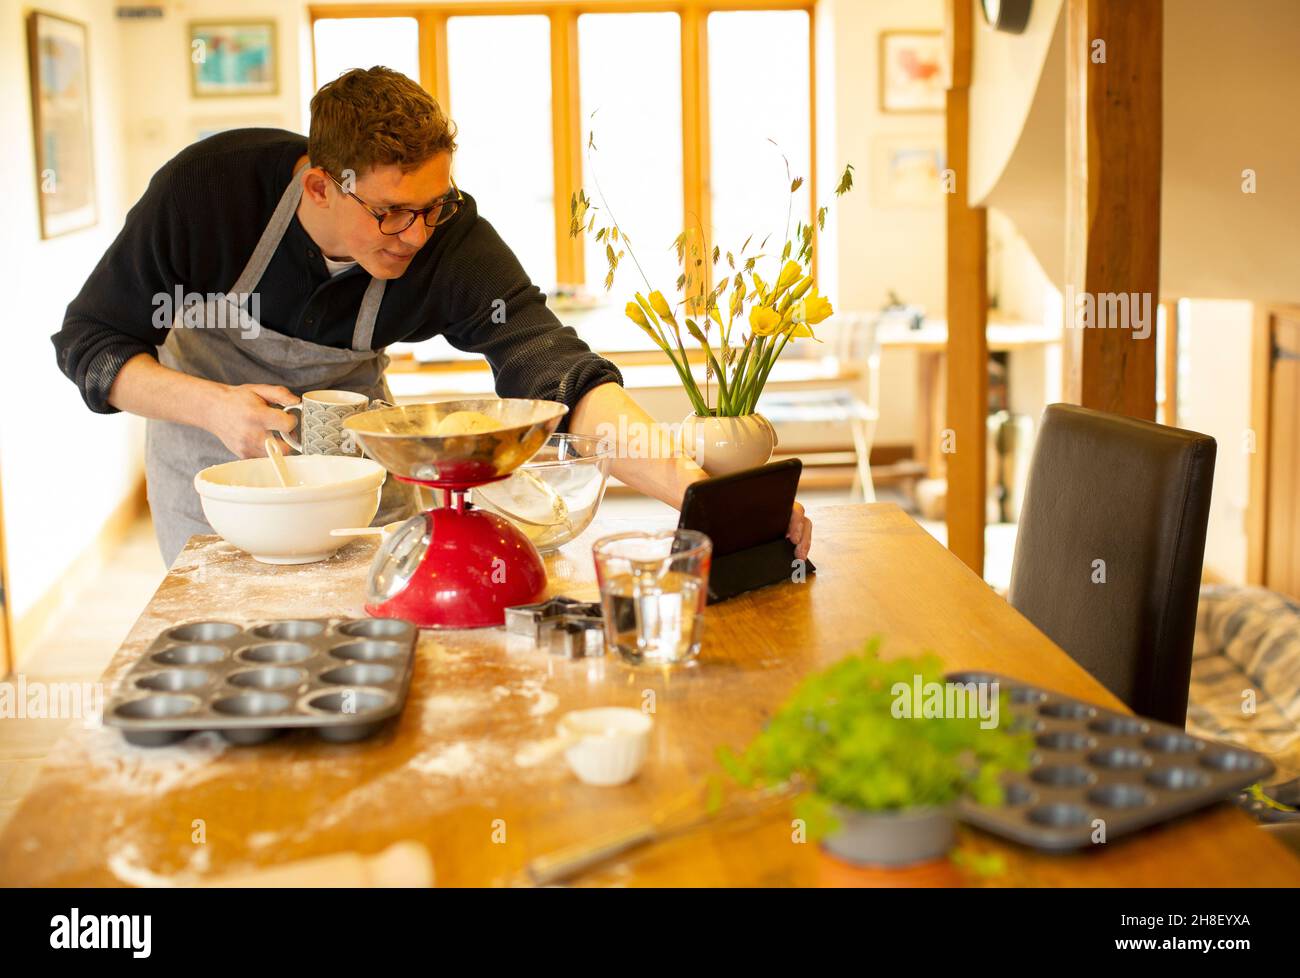 Uomo video chattare e cuocere in cucina disordinata Foto Stock